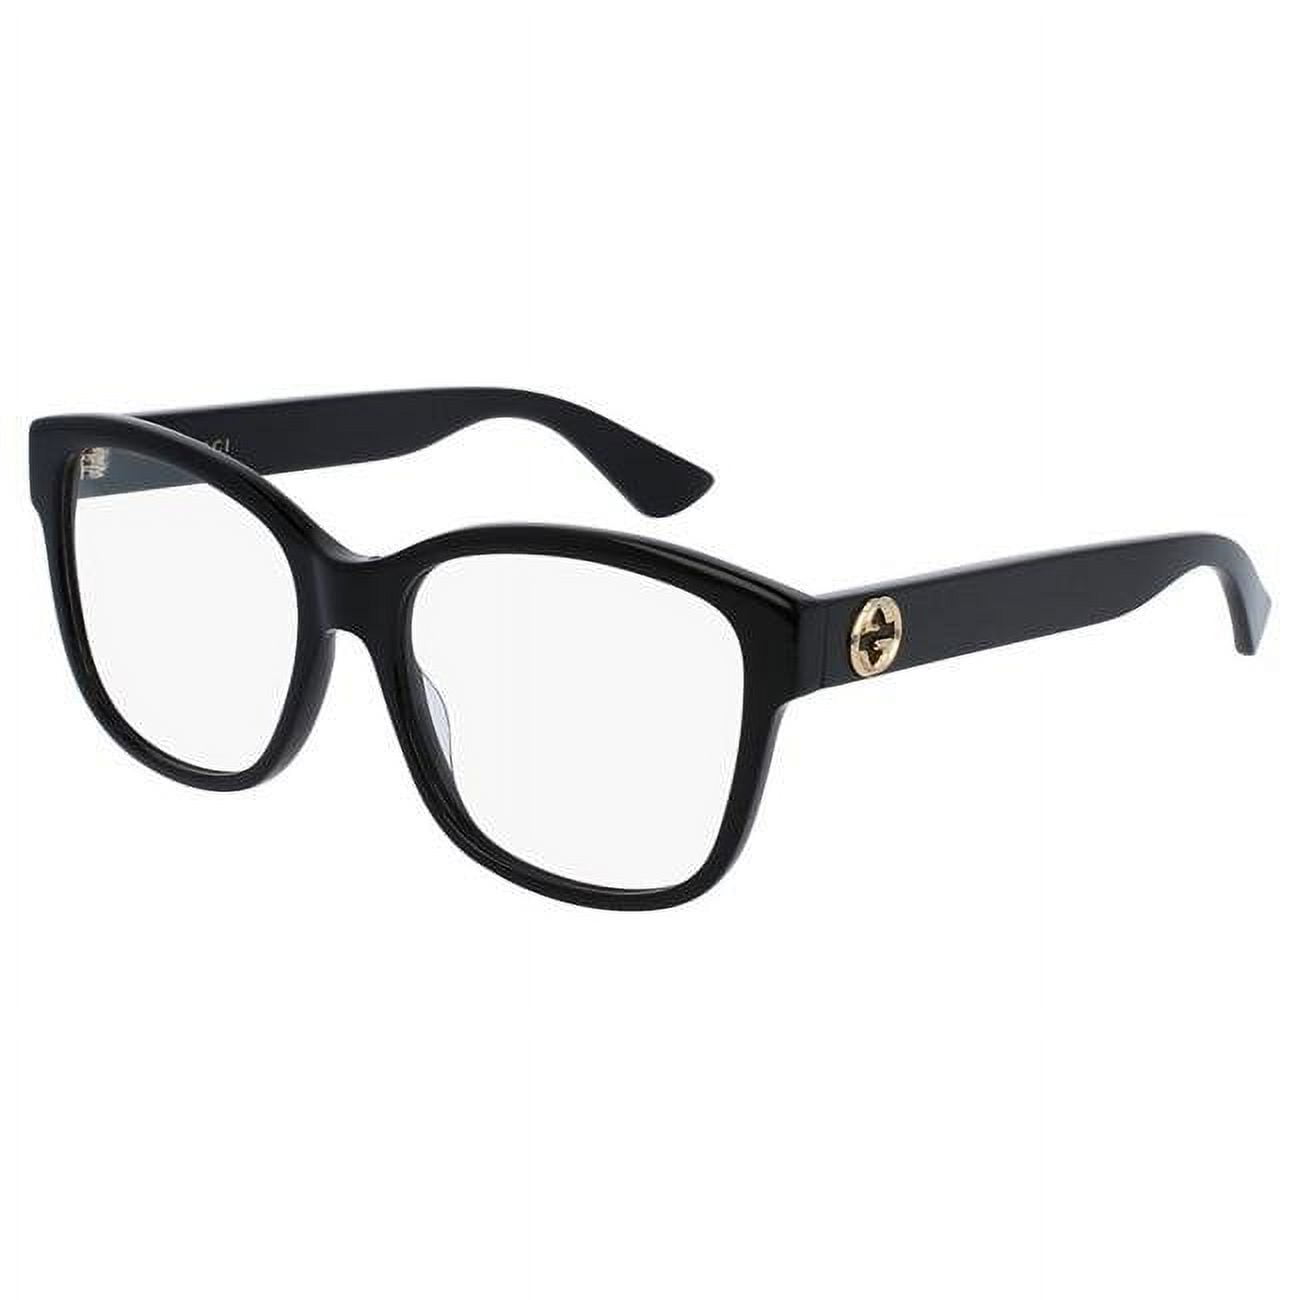 Gucci GG0038O-001 Square Eyeglasses for Ladies, Black - Walmart.com